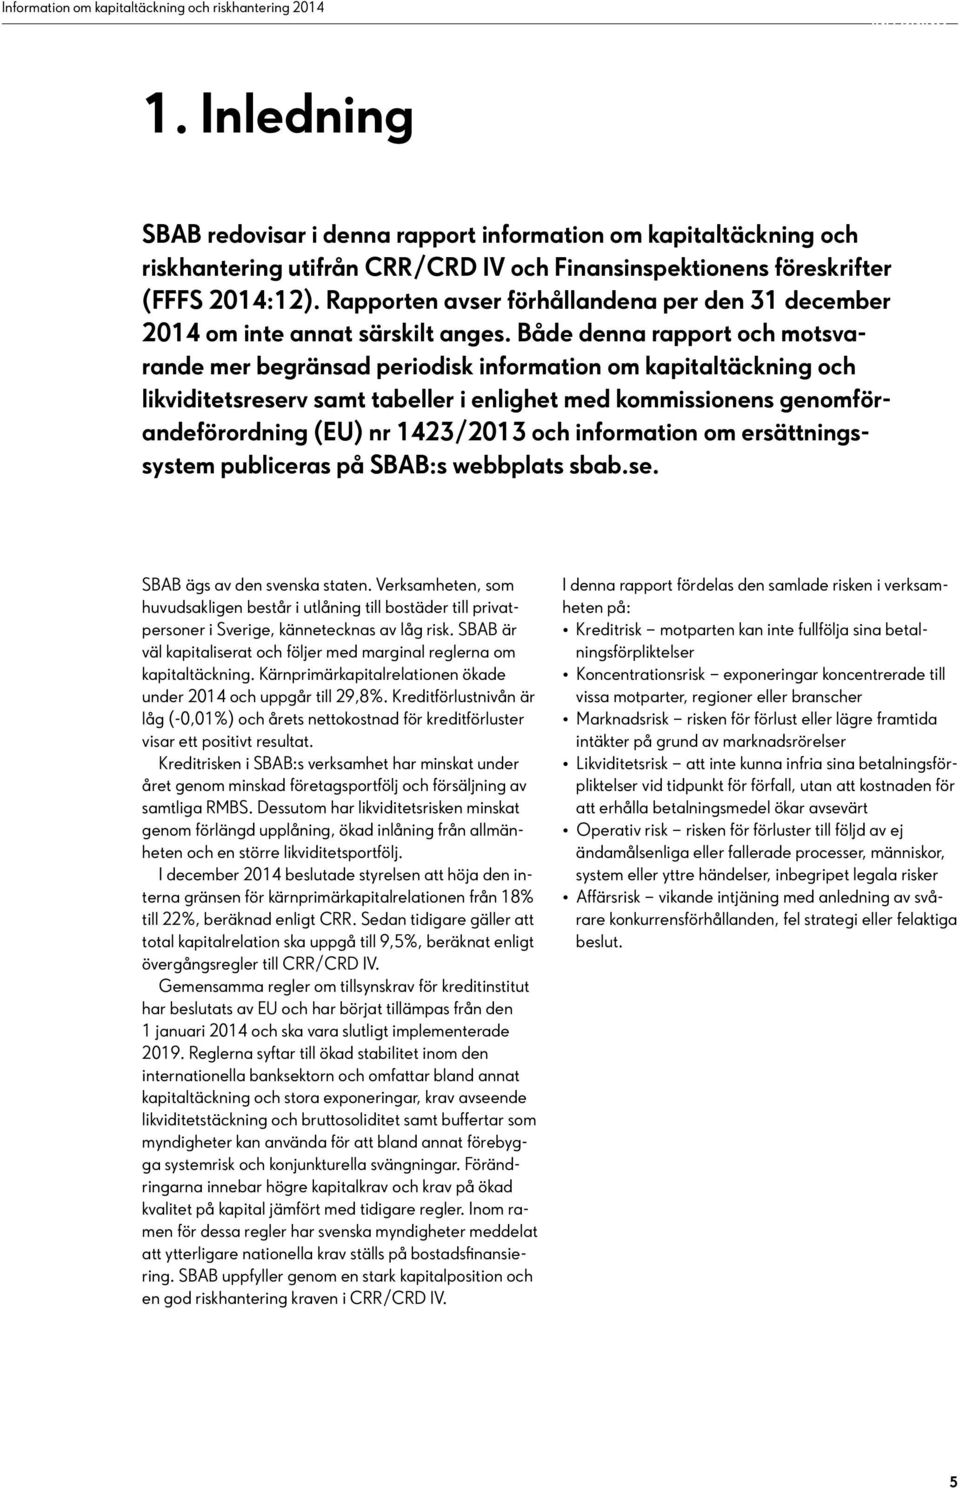 Både denna rapport och motsvarande mer begränsad periodisk information om kapitaltäckning och likviditetsreserv samt tabeller i enlighet med kommissionens genomförandeförordning (EU) nr 1423/2013 och